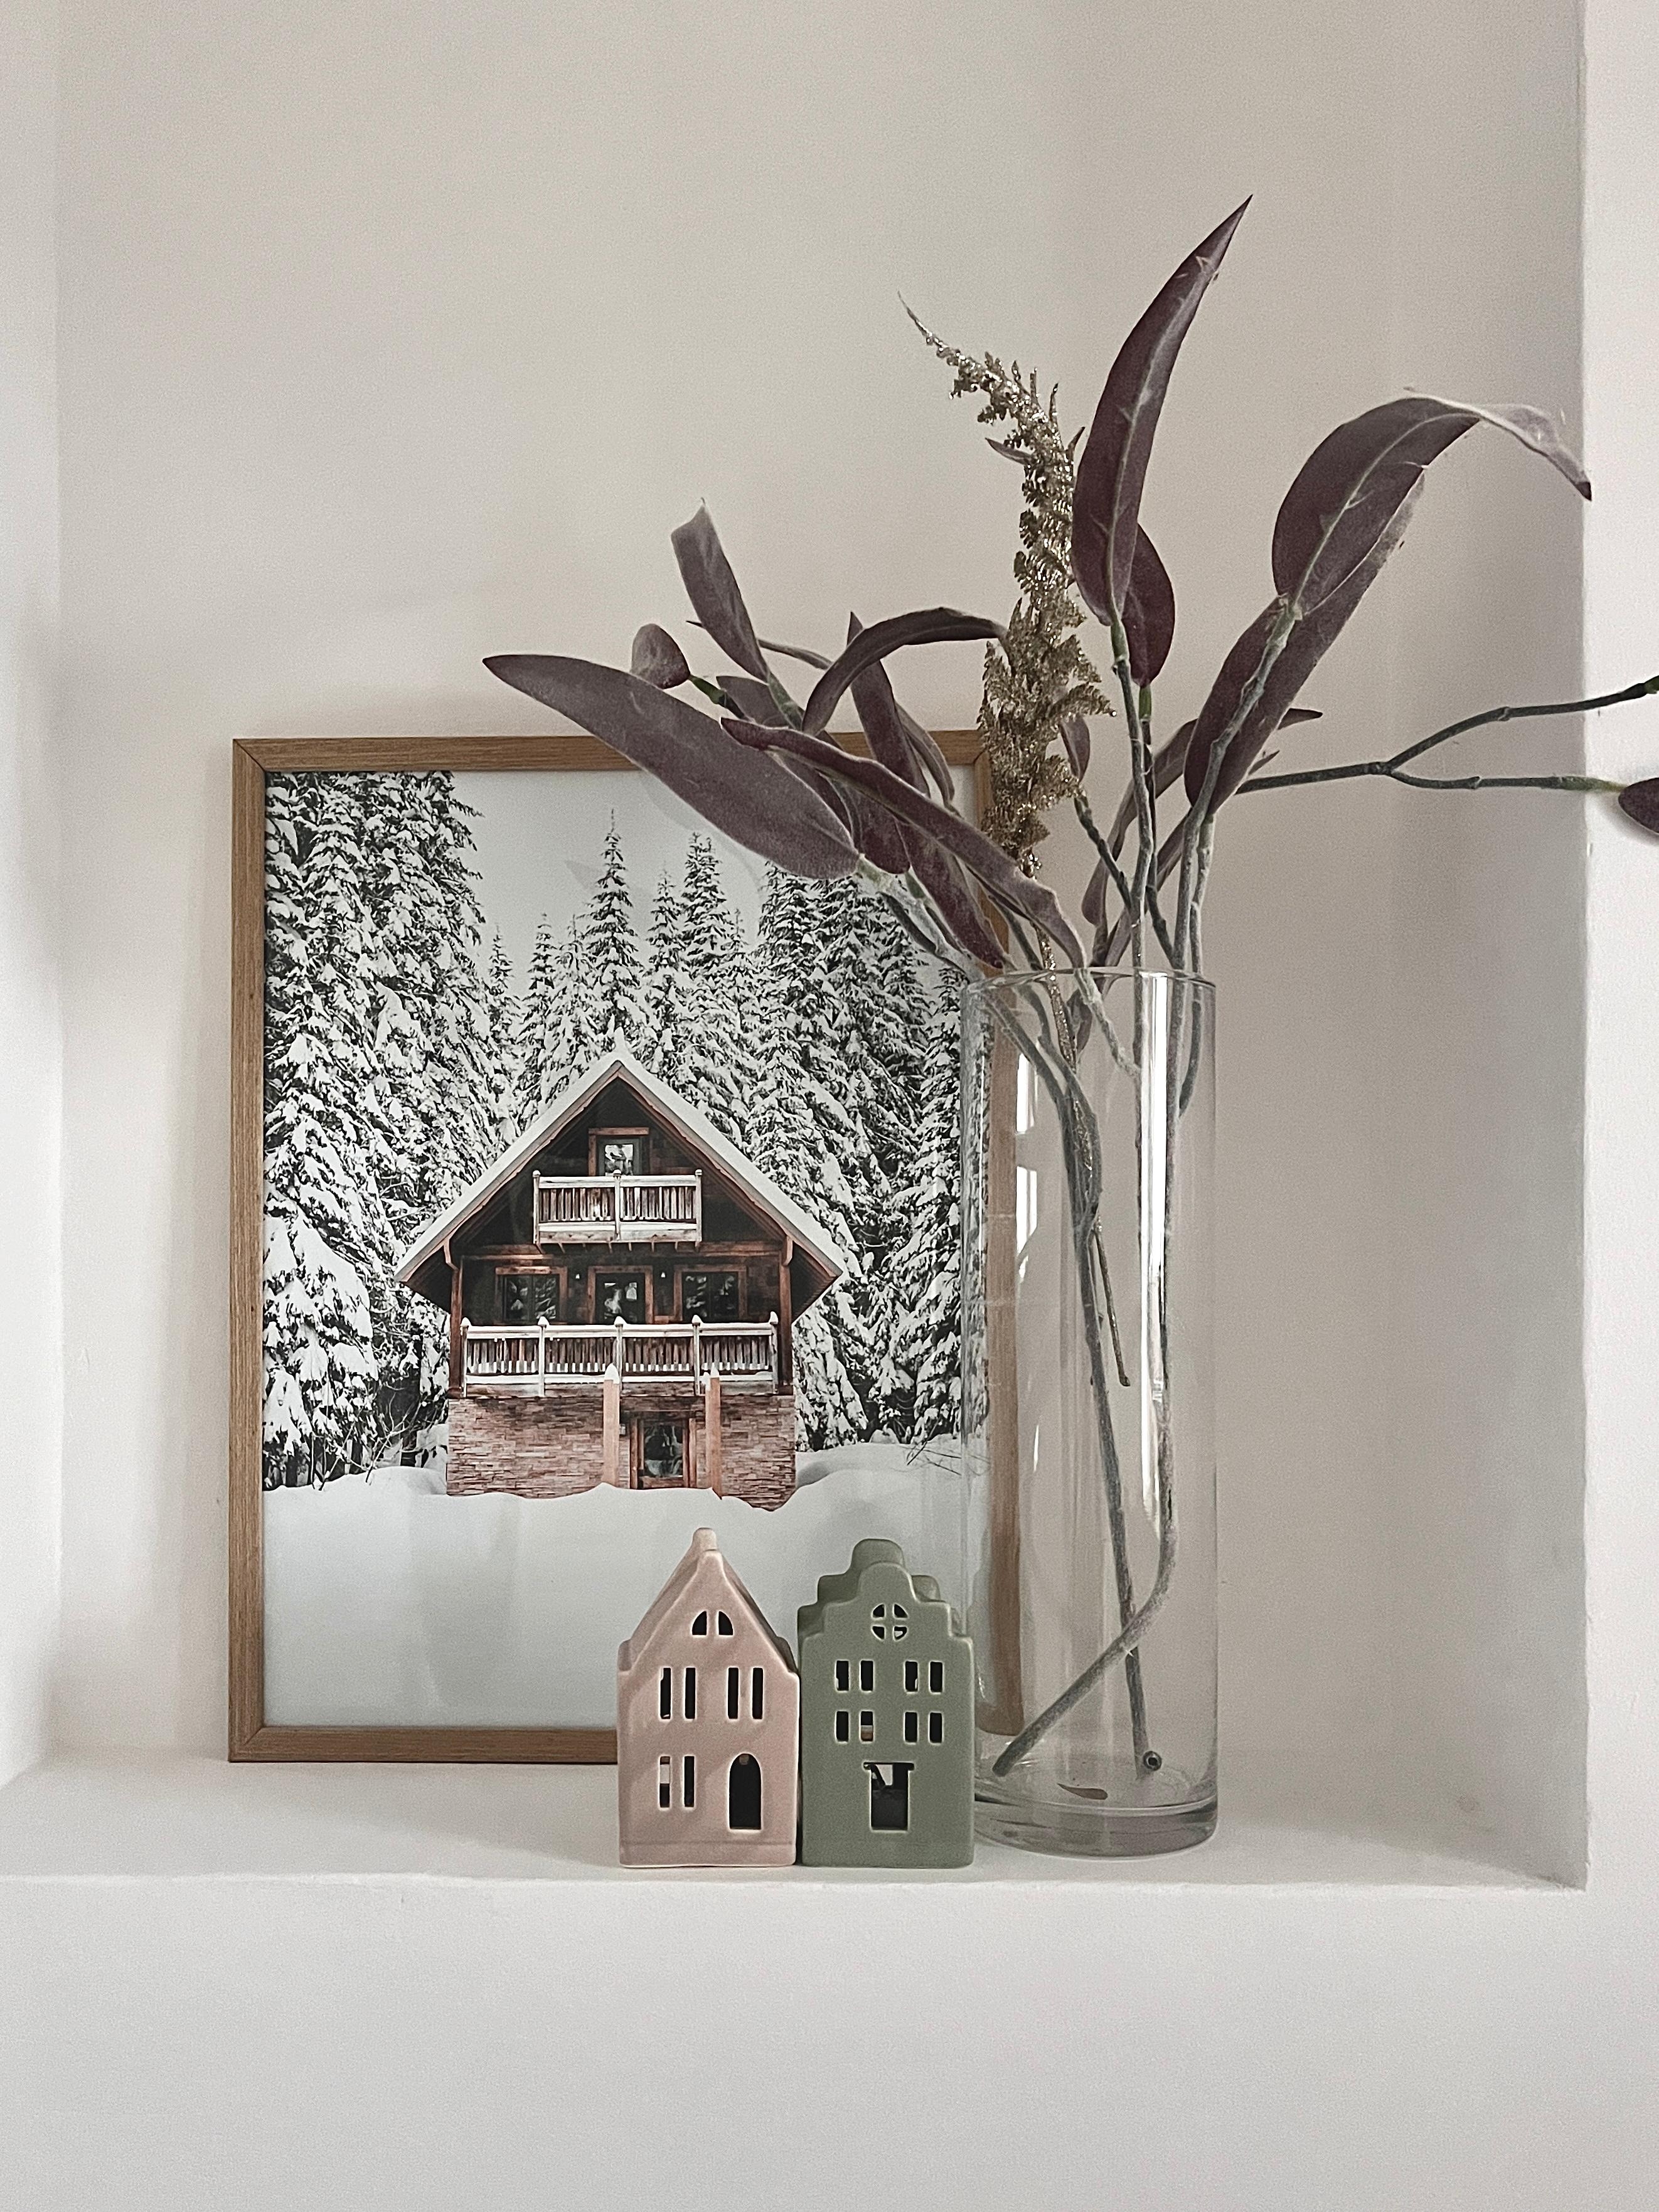 Winter Wonderland ❄️
#gästewc#winterwonderland#weihnachtsdeko#christmasdecorstion#gästebad#lichterhaus#blockhütte#christmas#mostwonderfultime